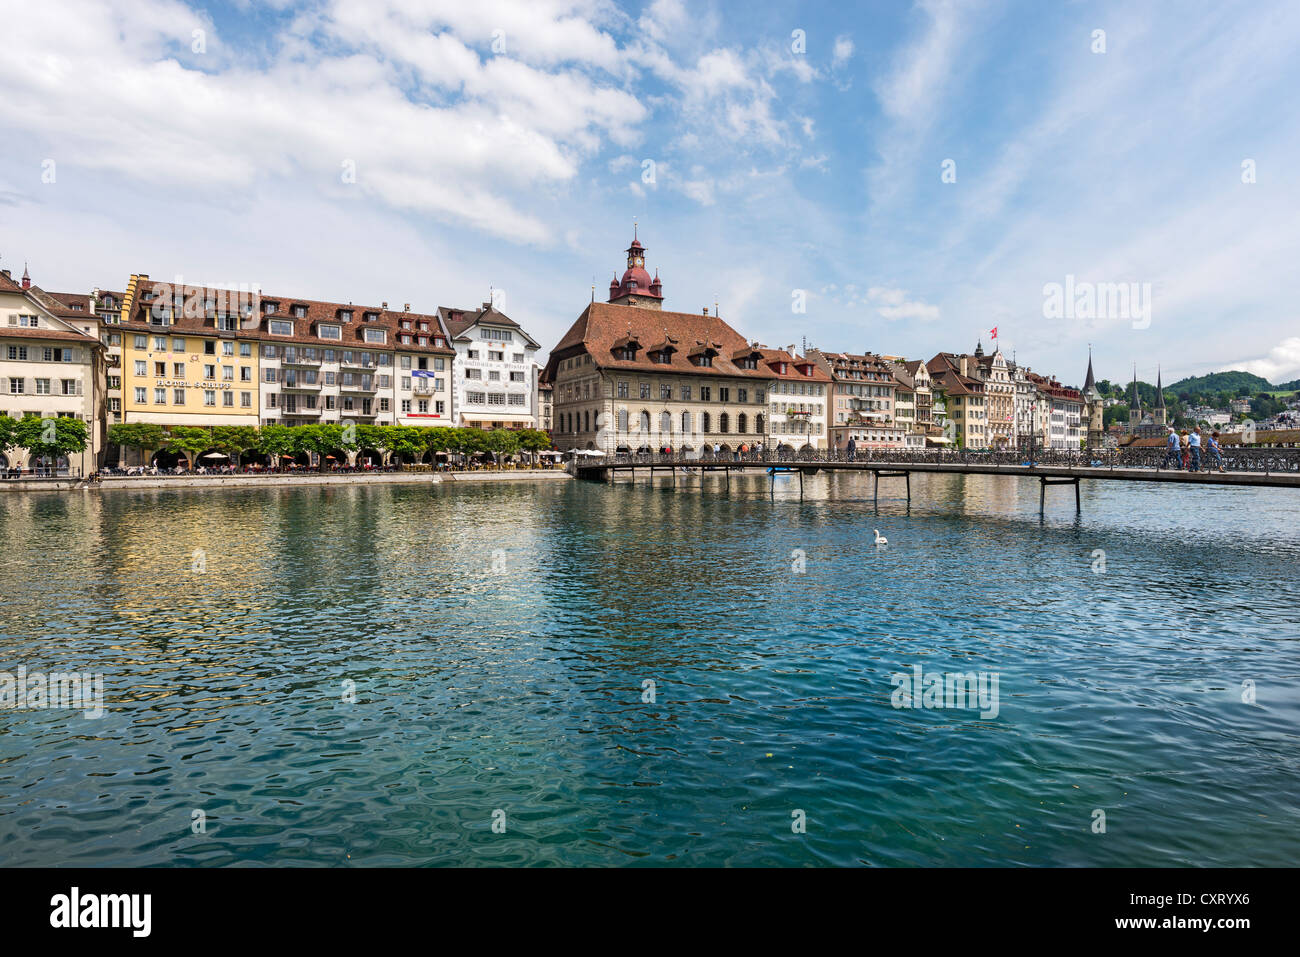 Blick über die Reuss, historischen Stadtteil von Luzern und das Rathaus, Rathaussteg Brücke im Vordergrund, Luzern Stockfoto